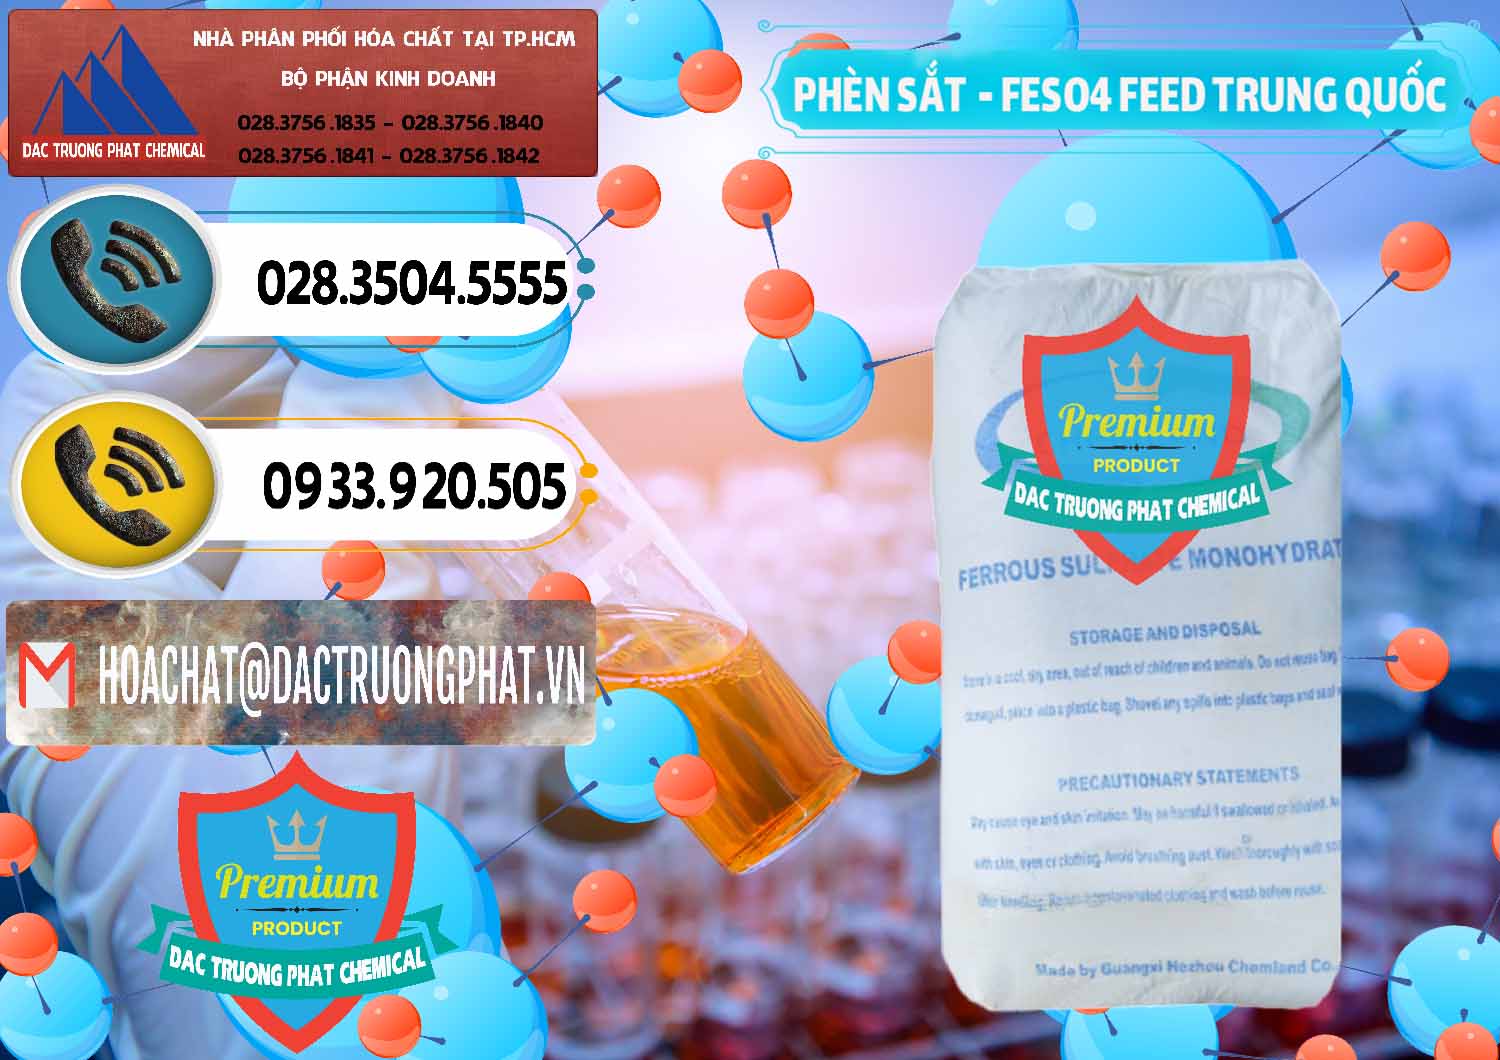 Cty bán _ phân phối Phèn Sắt - FeSO4.7H2O Feed Grade Chemland Trung Quốc China - 0455 - Công ty cung cấp & nhập khẩu hóa chất tại TP.HCM - hoachatdetnhuom.vn